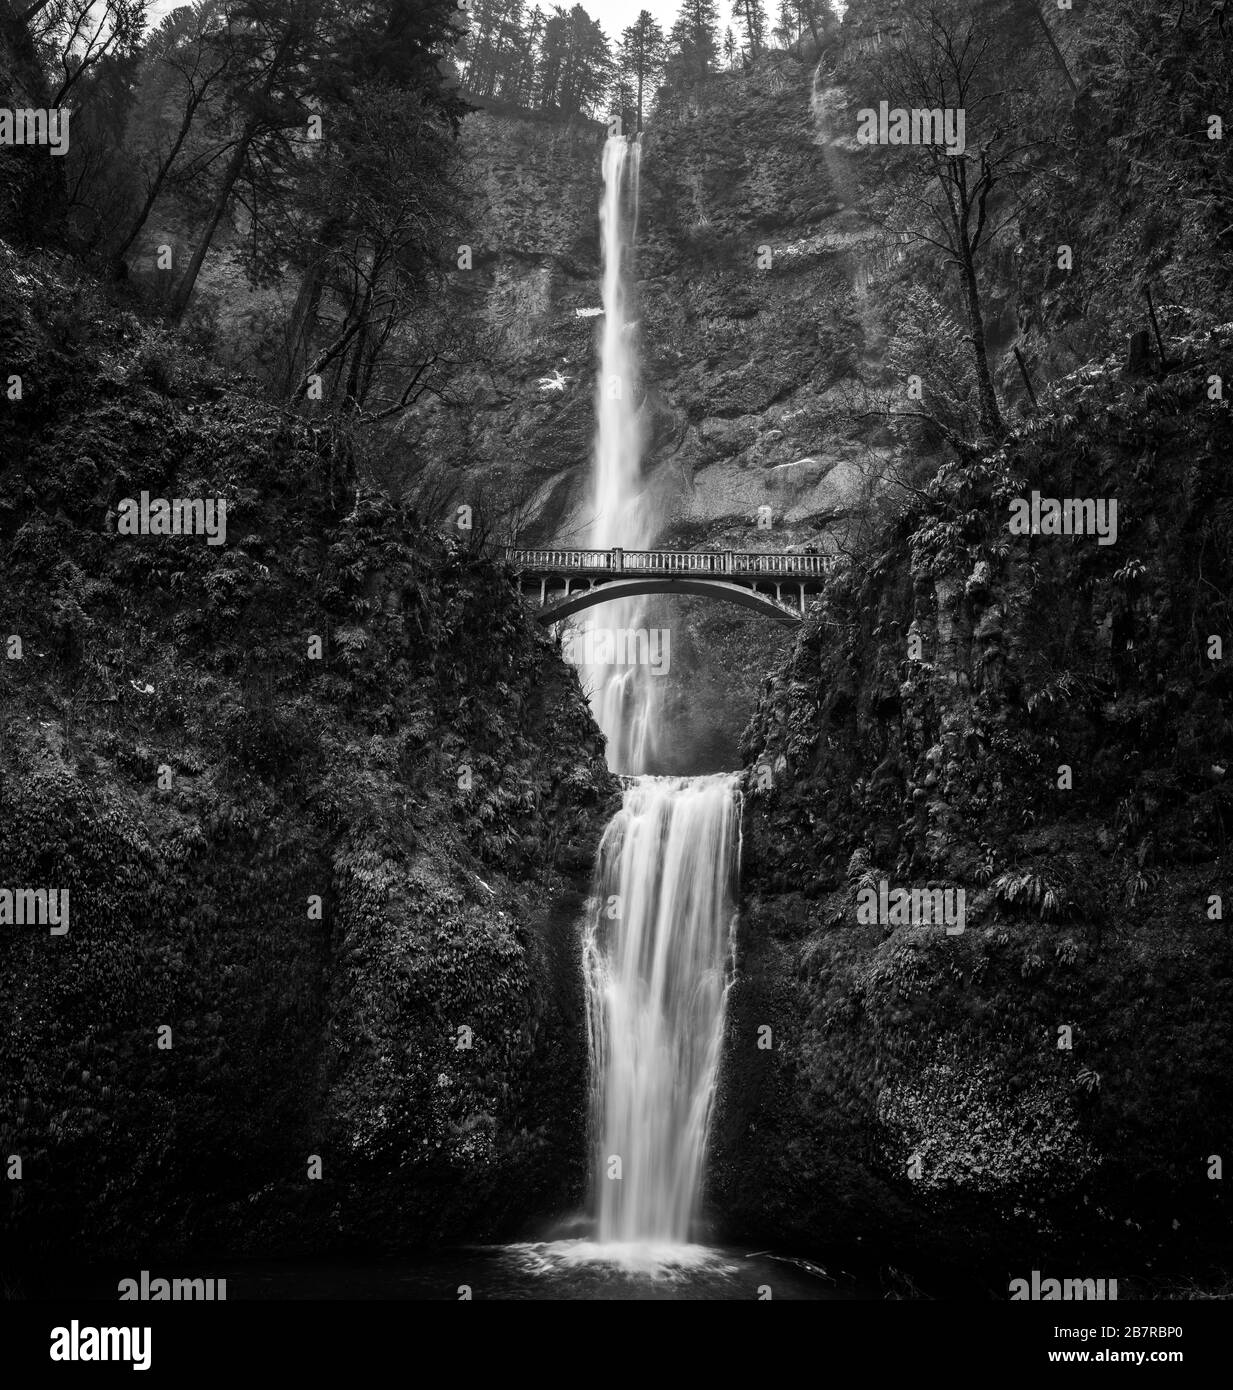 Waterfall in Oregon Stock Photo